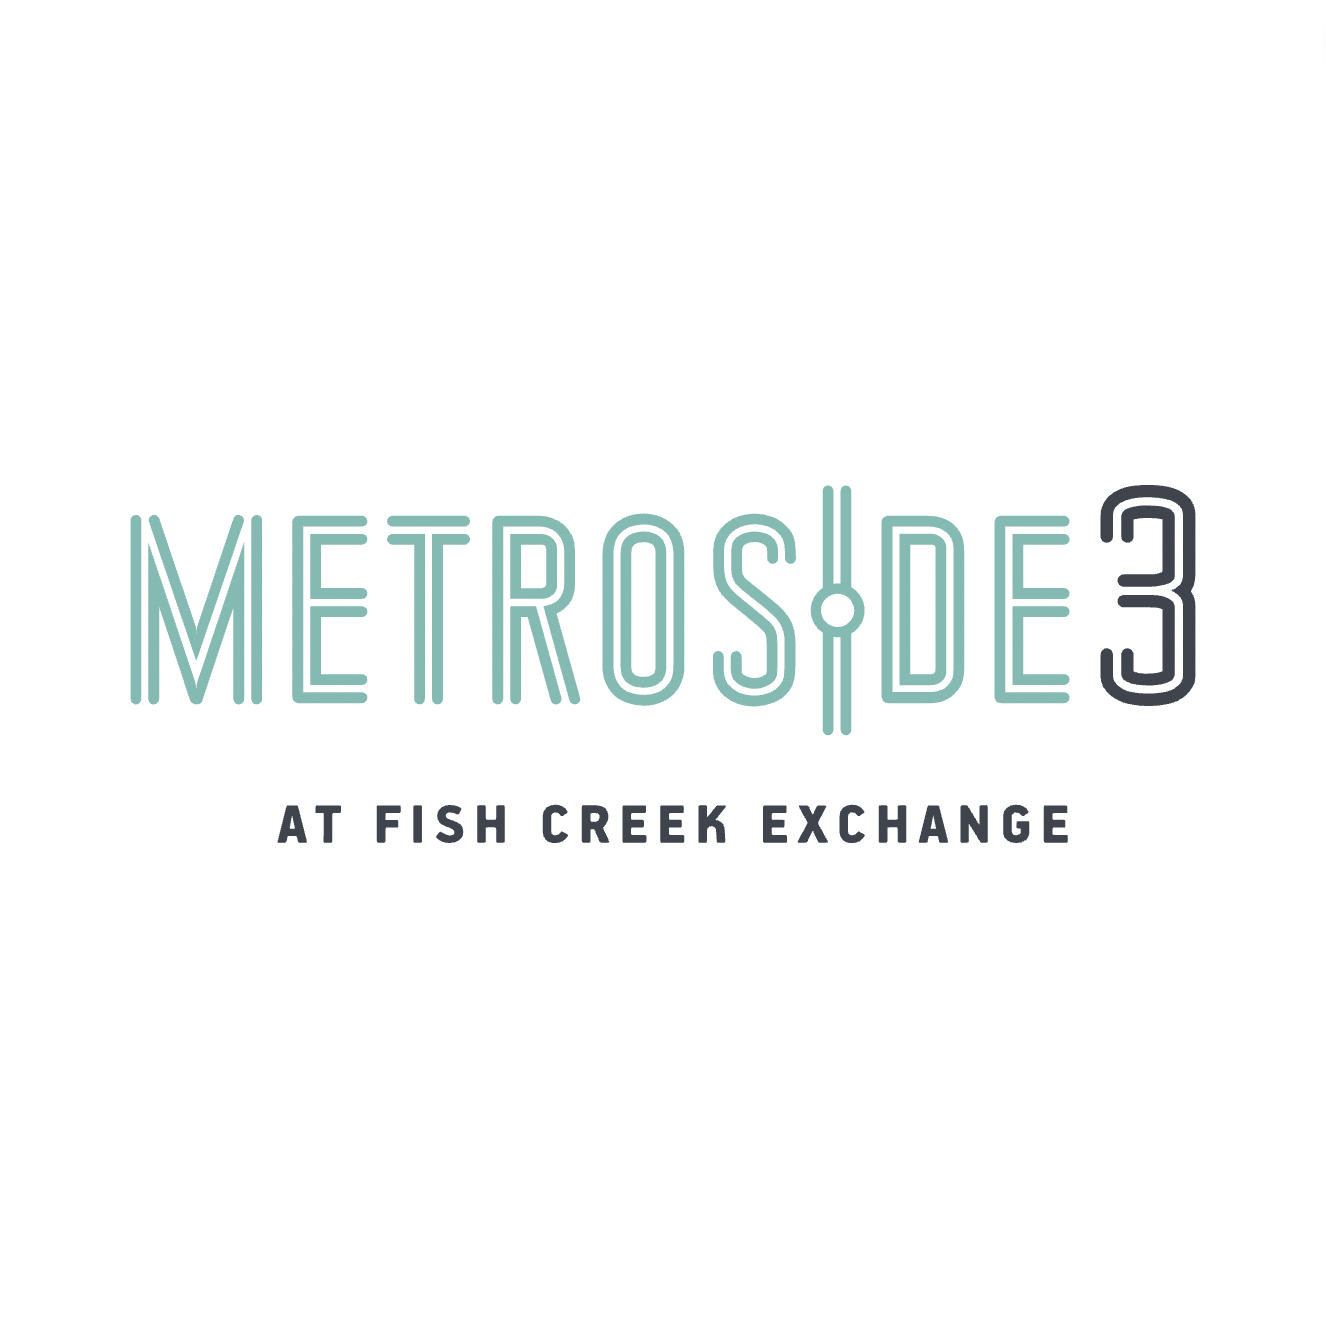 Metroside 3 at Fish Creek Exchange